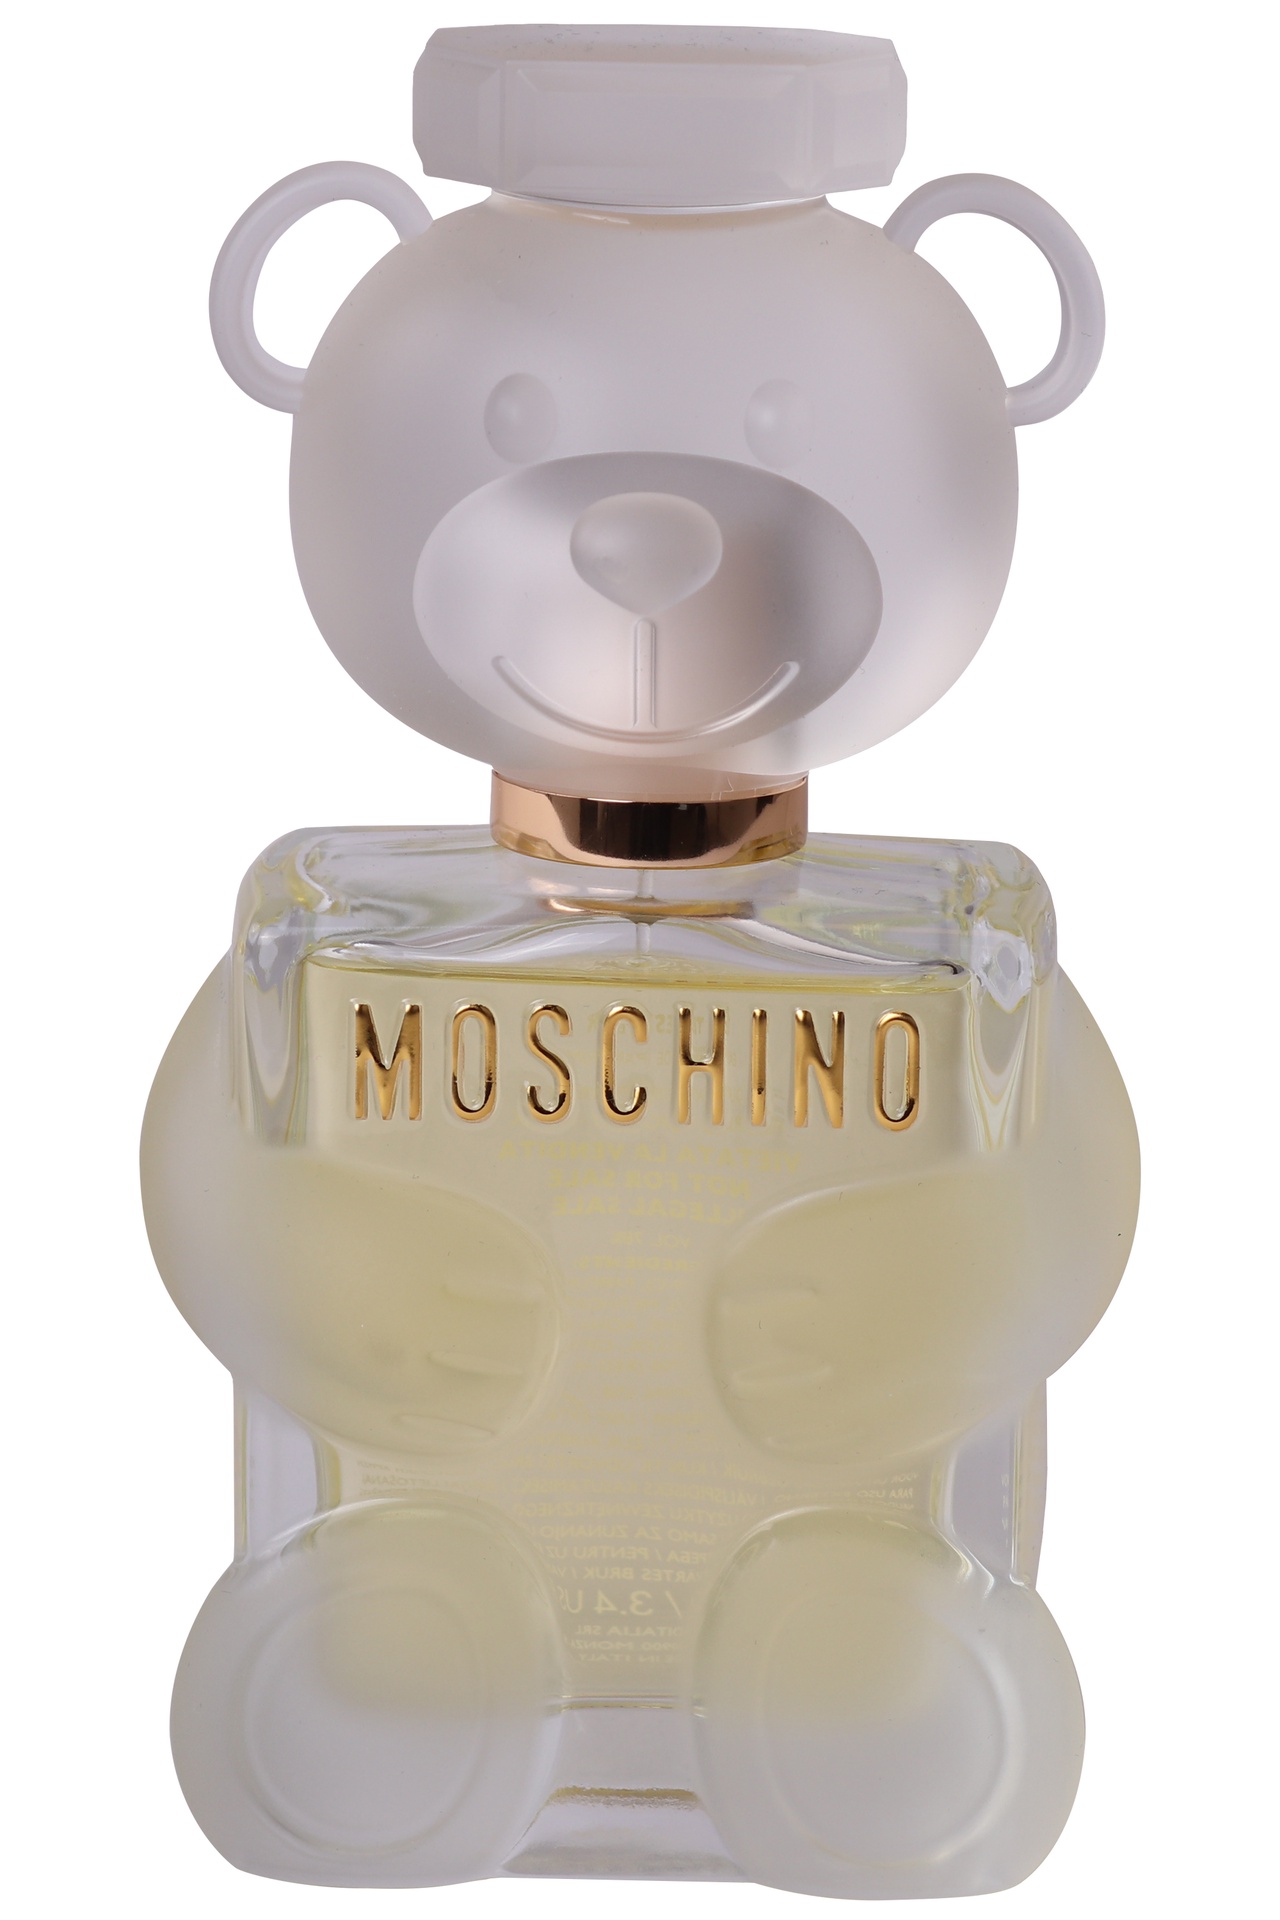 Moschino - Perfume Moschino Toy 2 100 ml - BLS Fashion